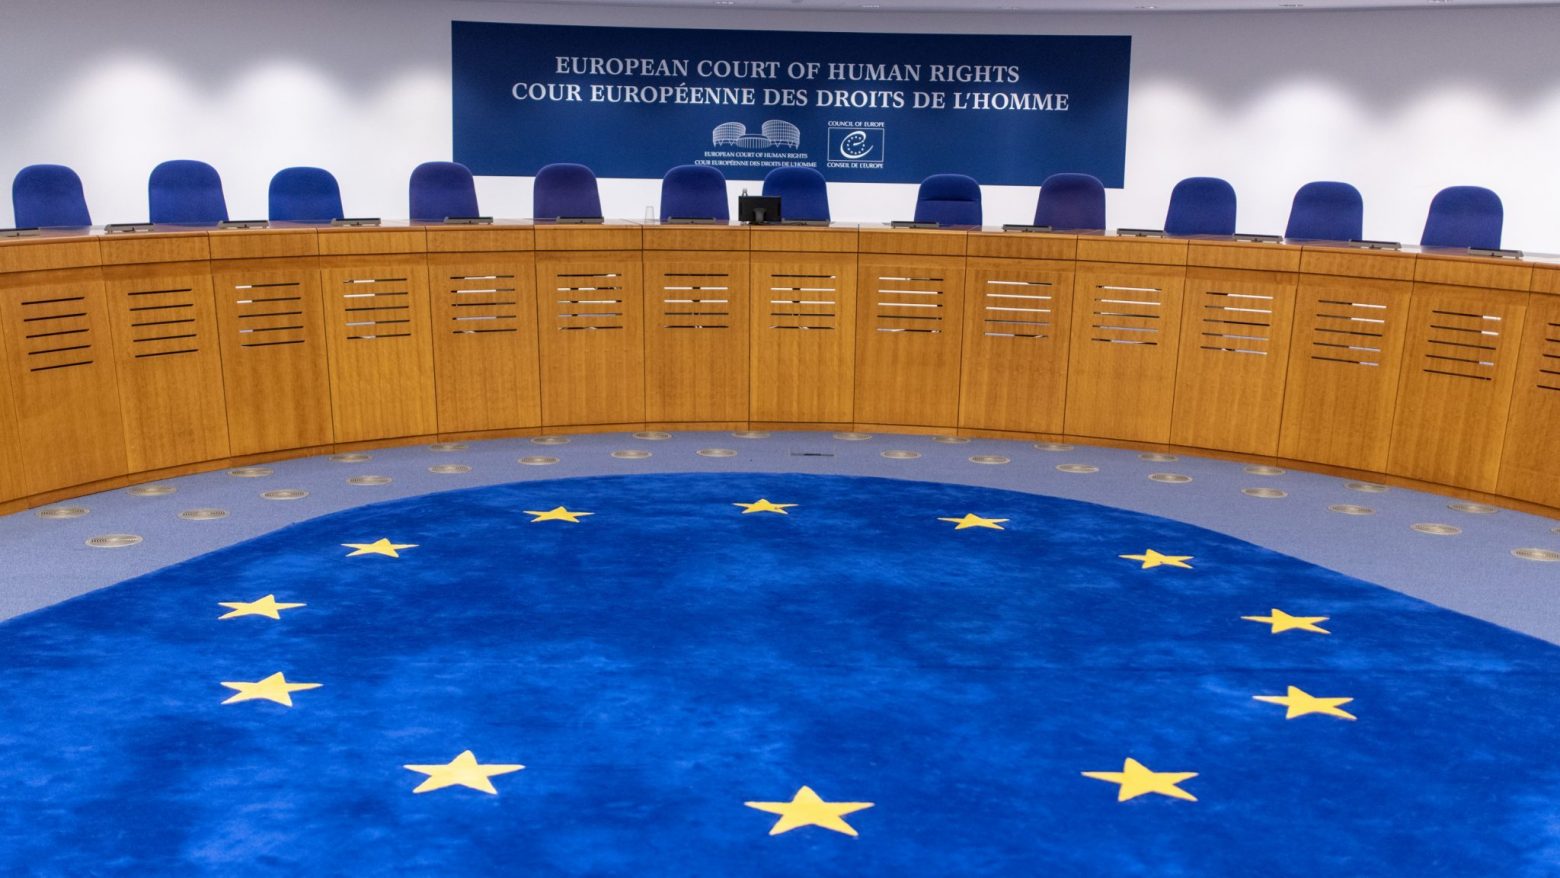 Τουρκία - Καταδίκη από το Ευρωπαϊκό Δικαστήριο Δικαιωμάτων για την προφυλάκιση της δημοσιογράφου Ναζλί Ιλιτσάκ